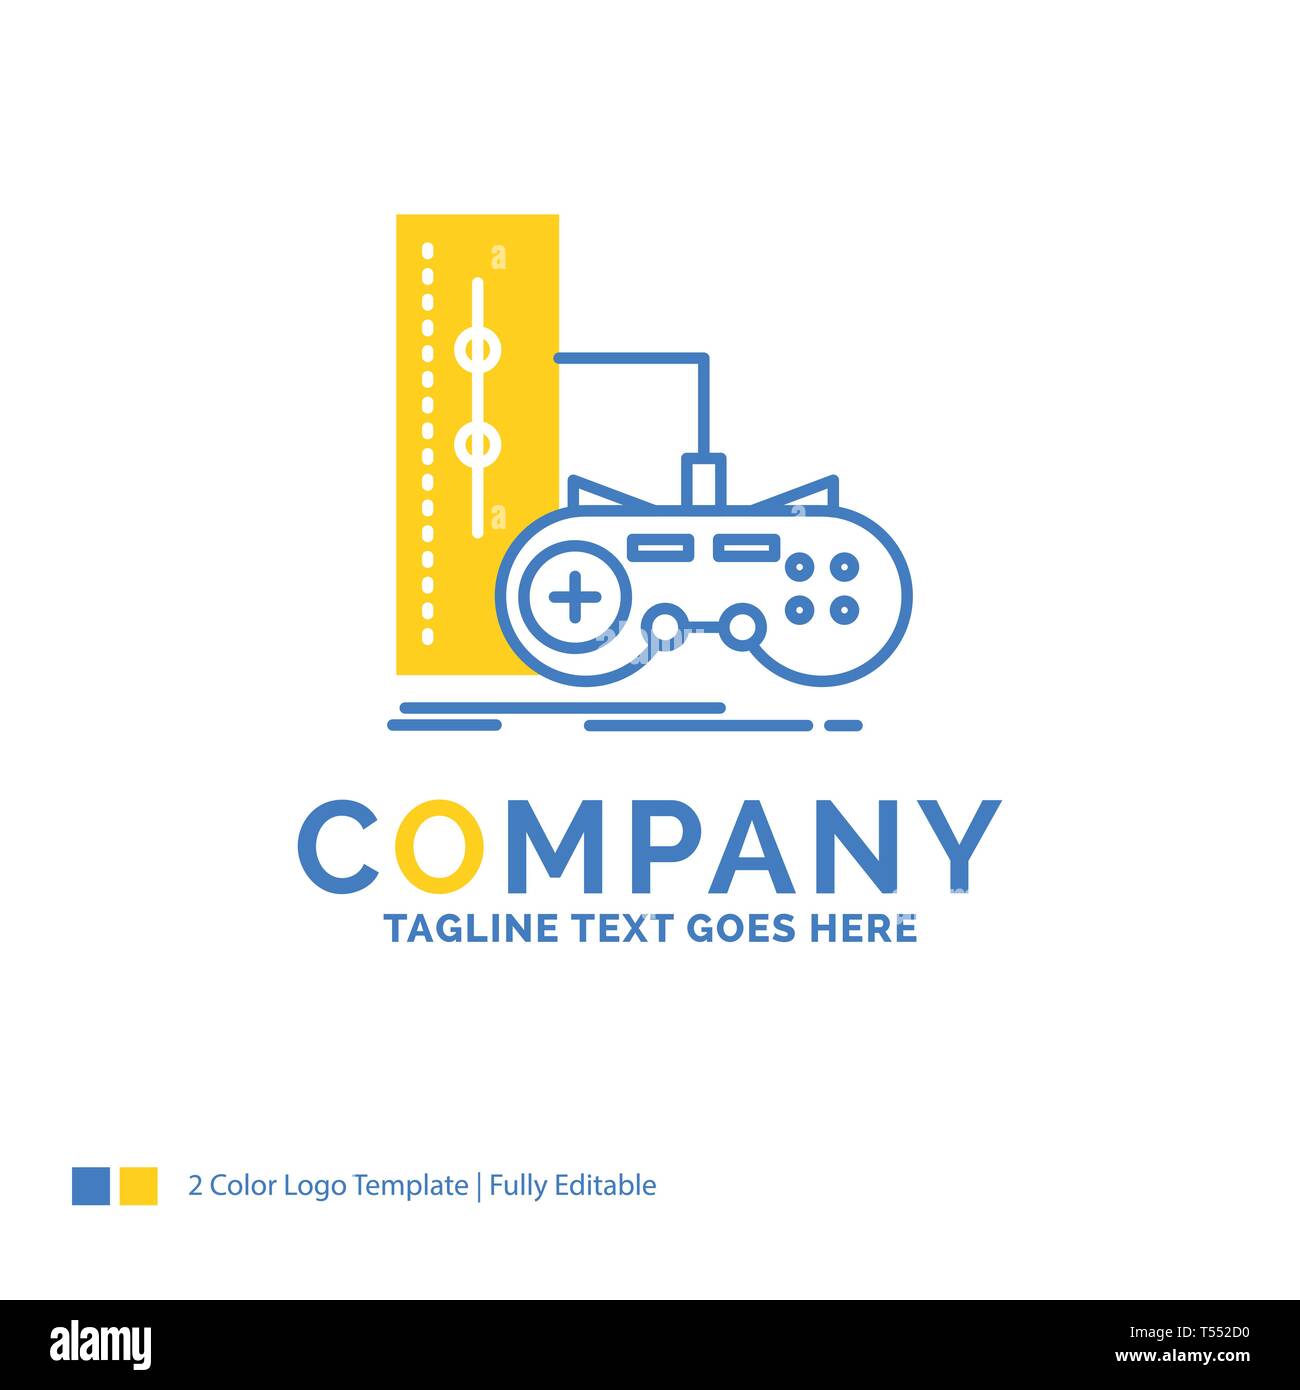 Xbox Game Studios, Rotated Logo, White Background Stock Photo - Alamy